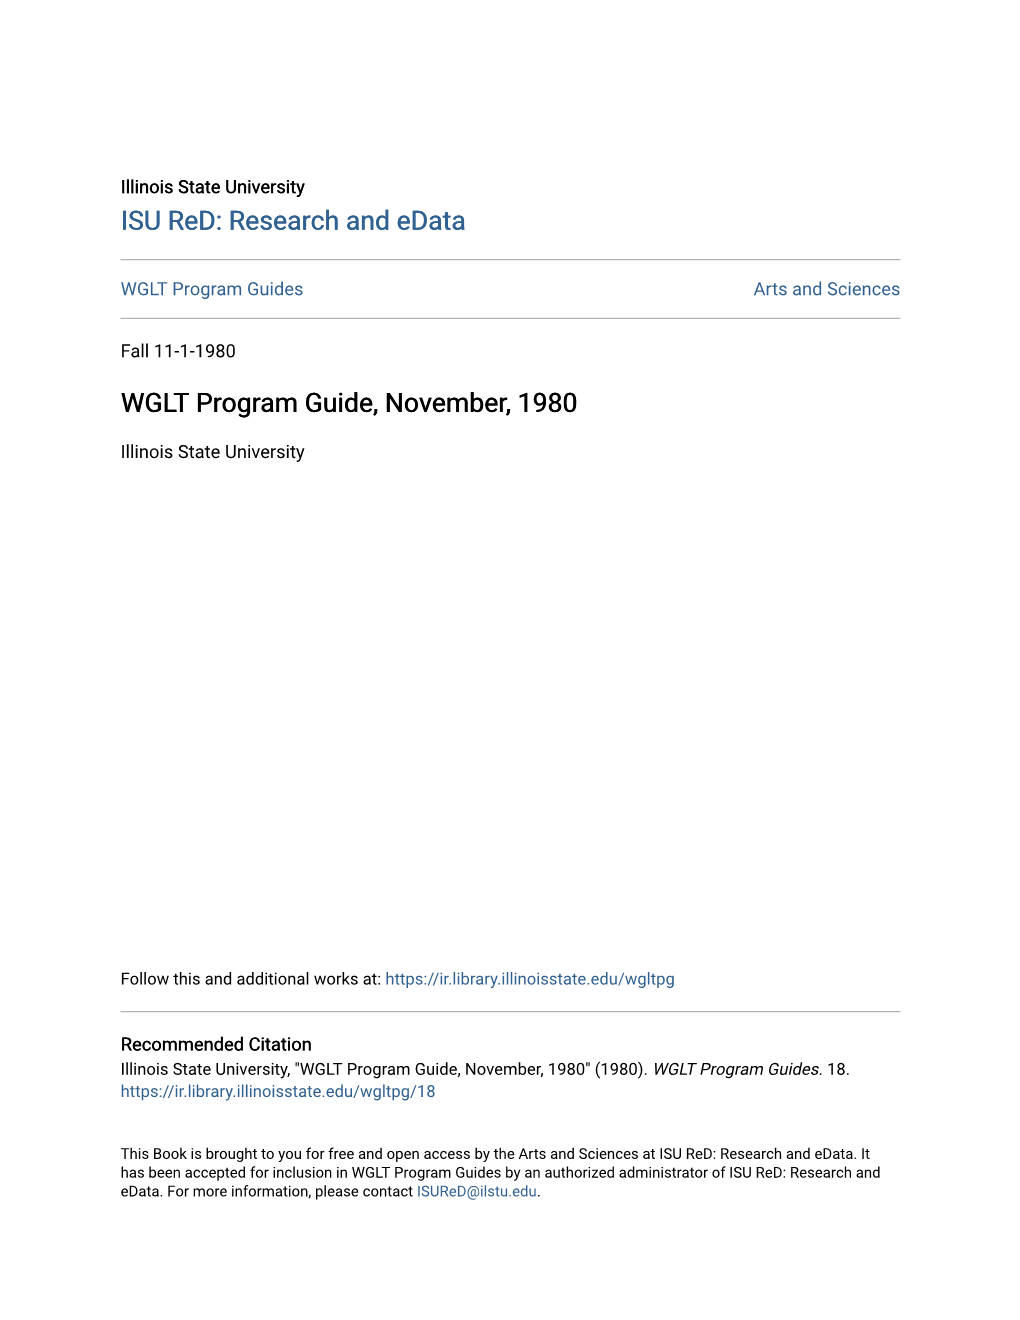 WGLT Program Guide, November, 1980